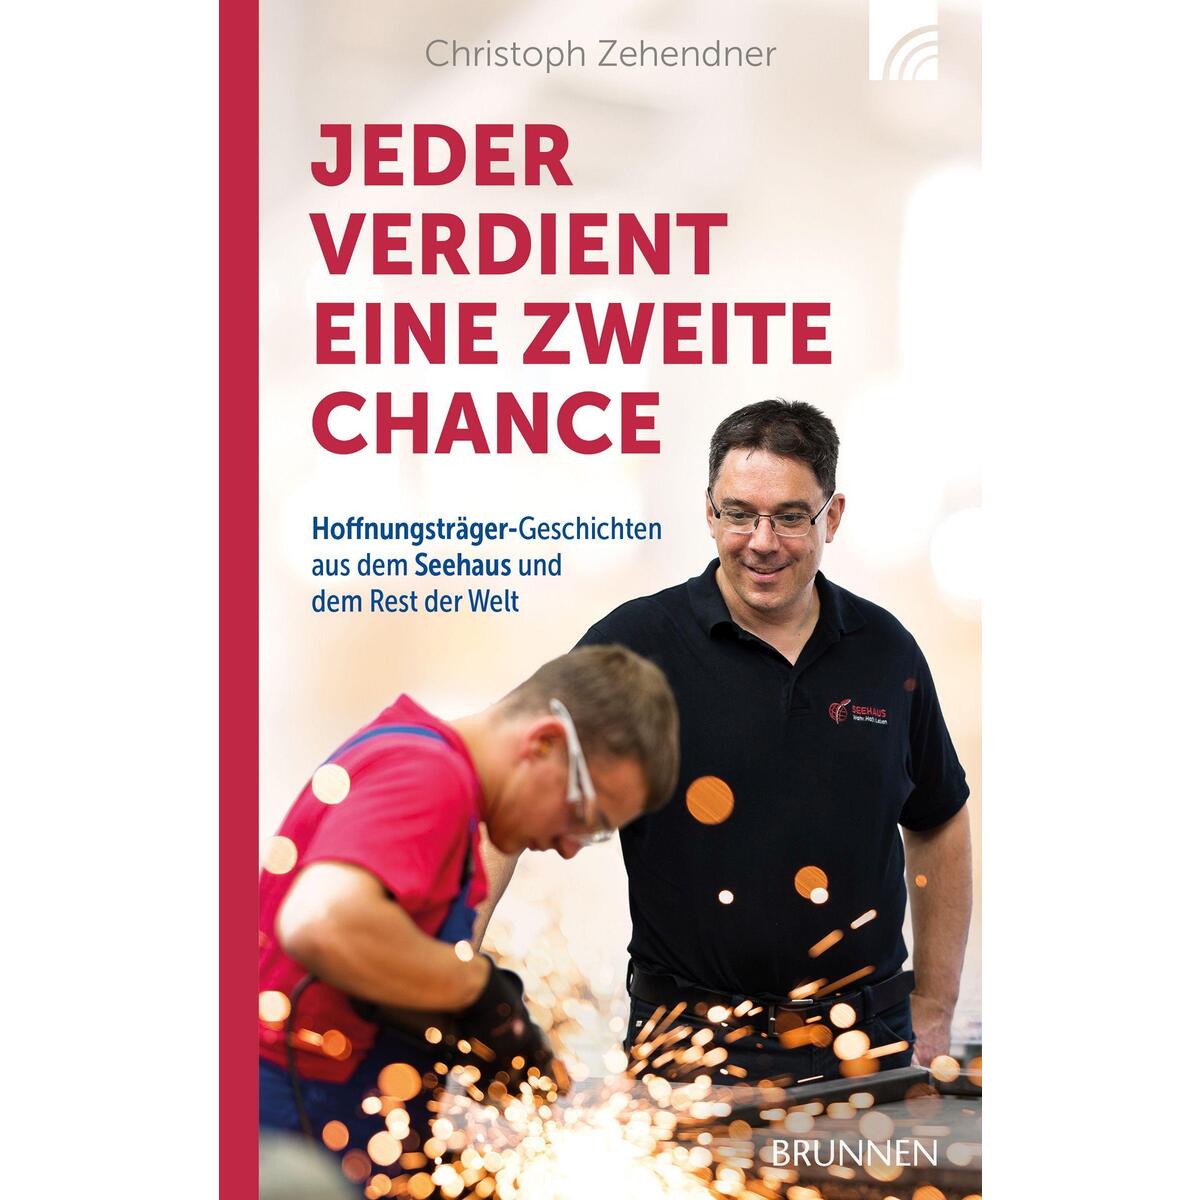 Jeder verdient eine zweite Chance von Brunnen-Verlag GmbH